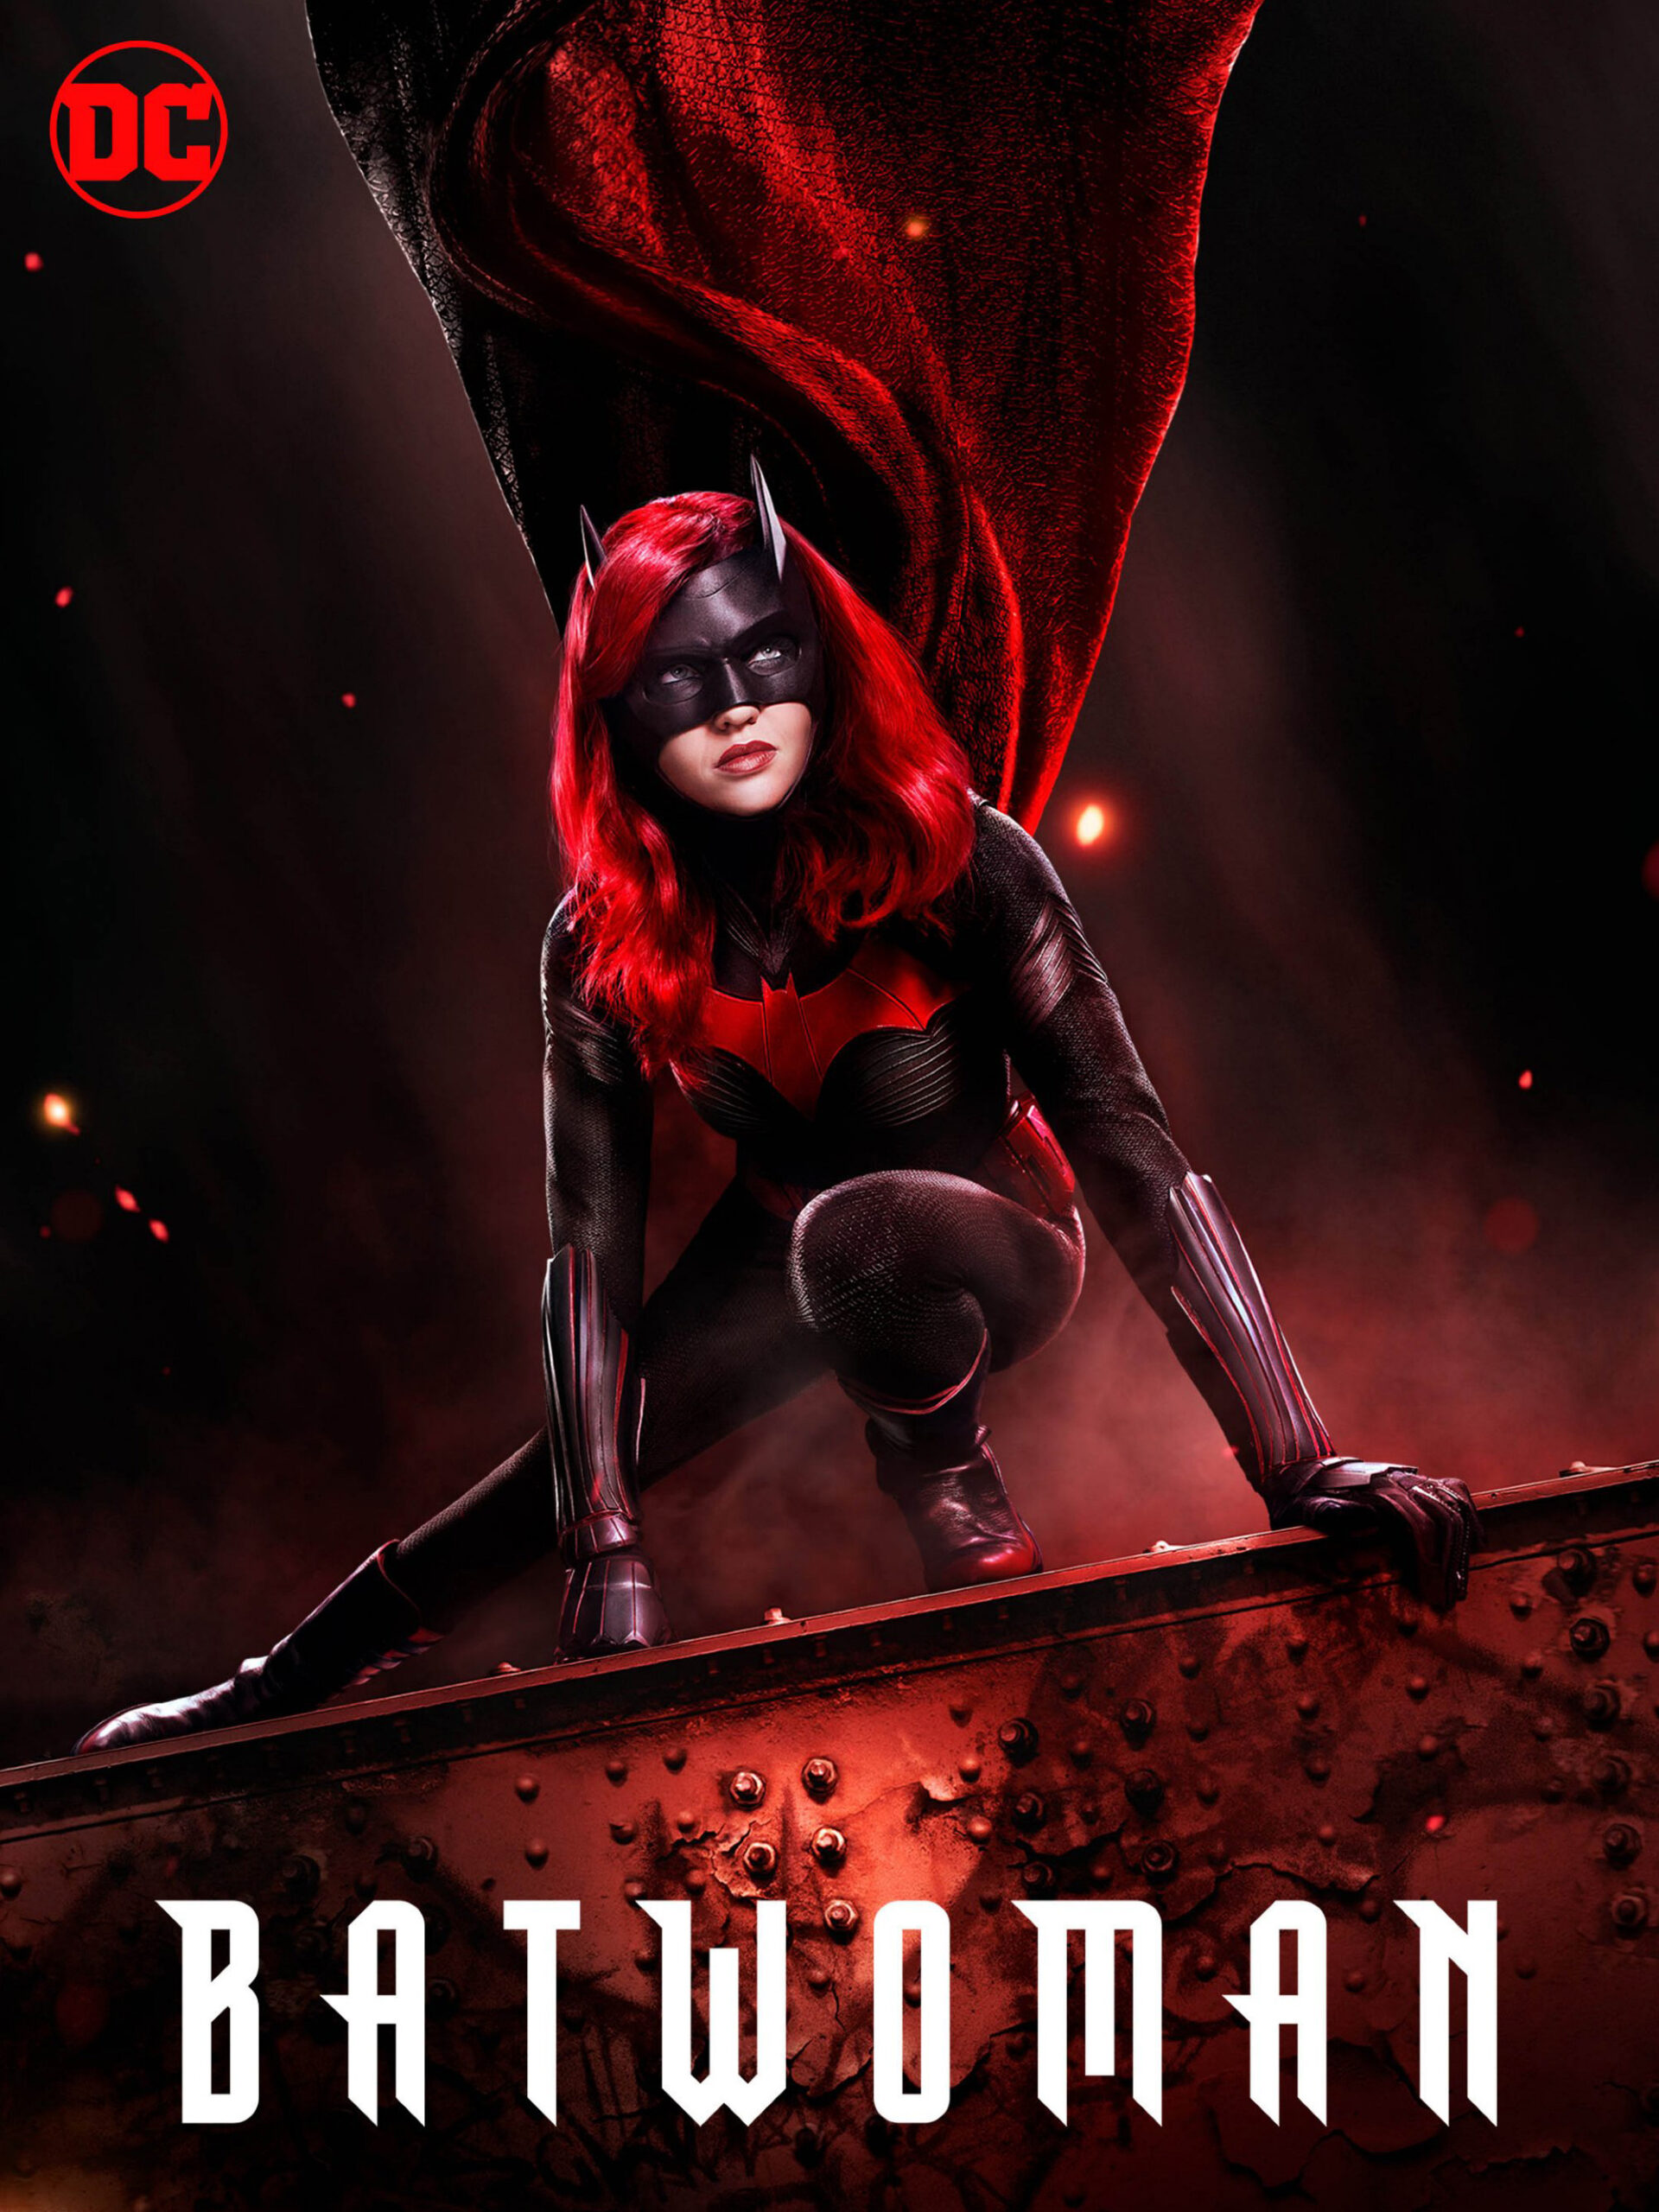 ดูหนังออนไลน์ฟรี Batwoman Season 1 (2019) EP.8 แบทวูแมน ซีซั่น 1 ตอนที่ 8 (Soundtrack)